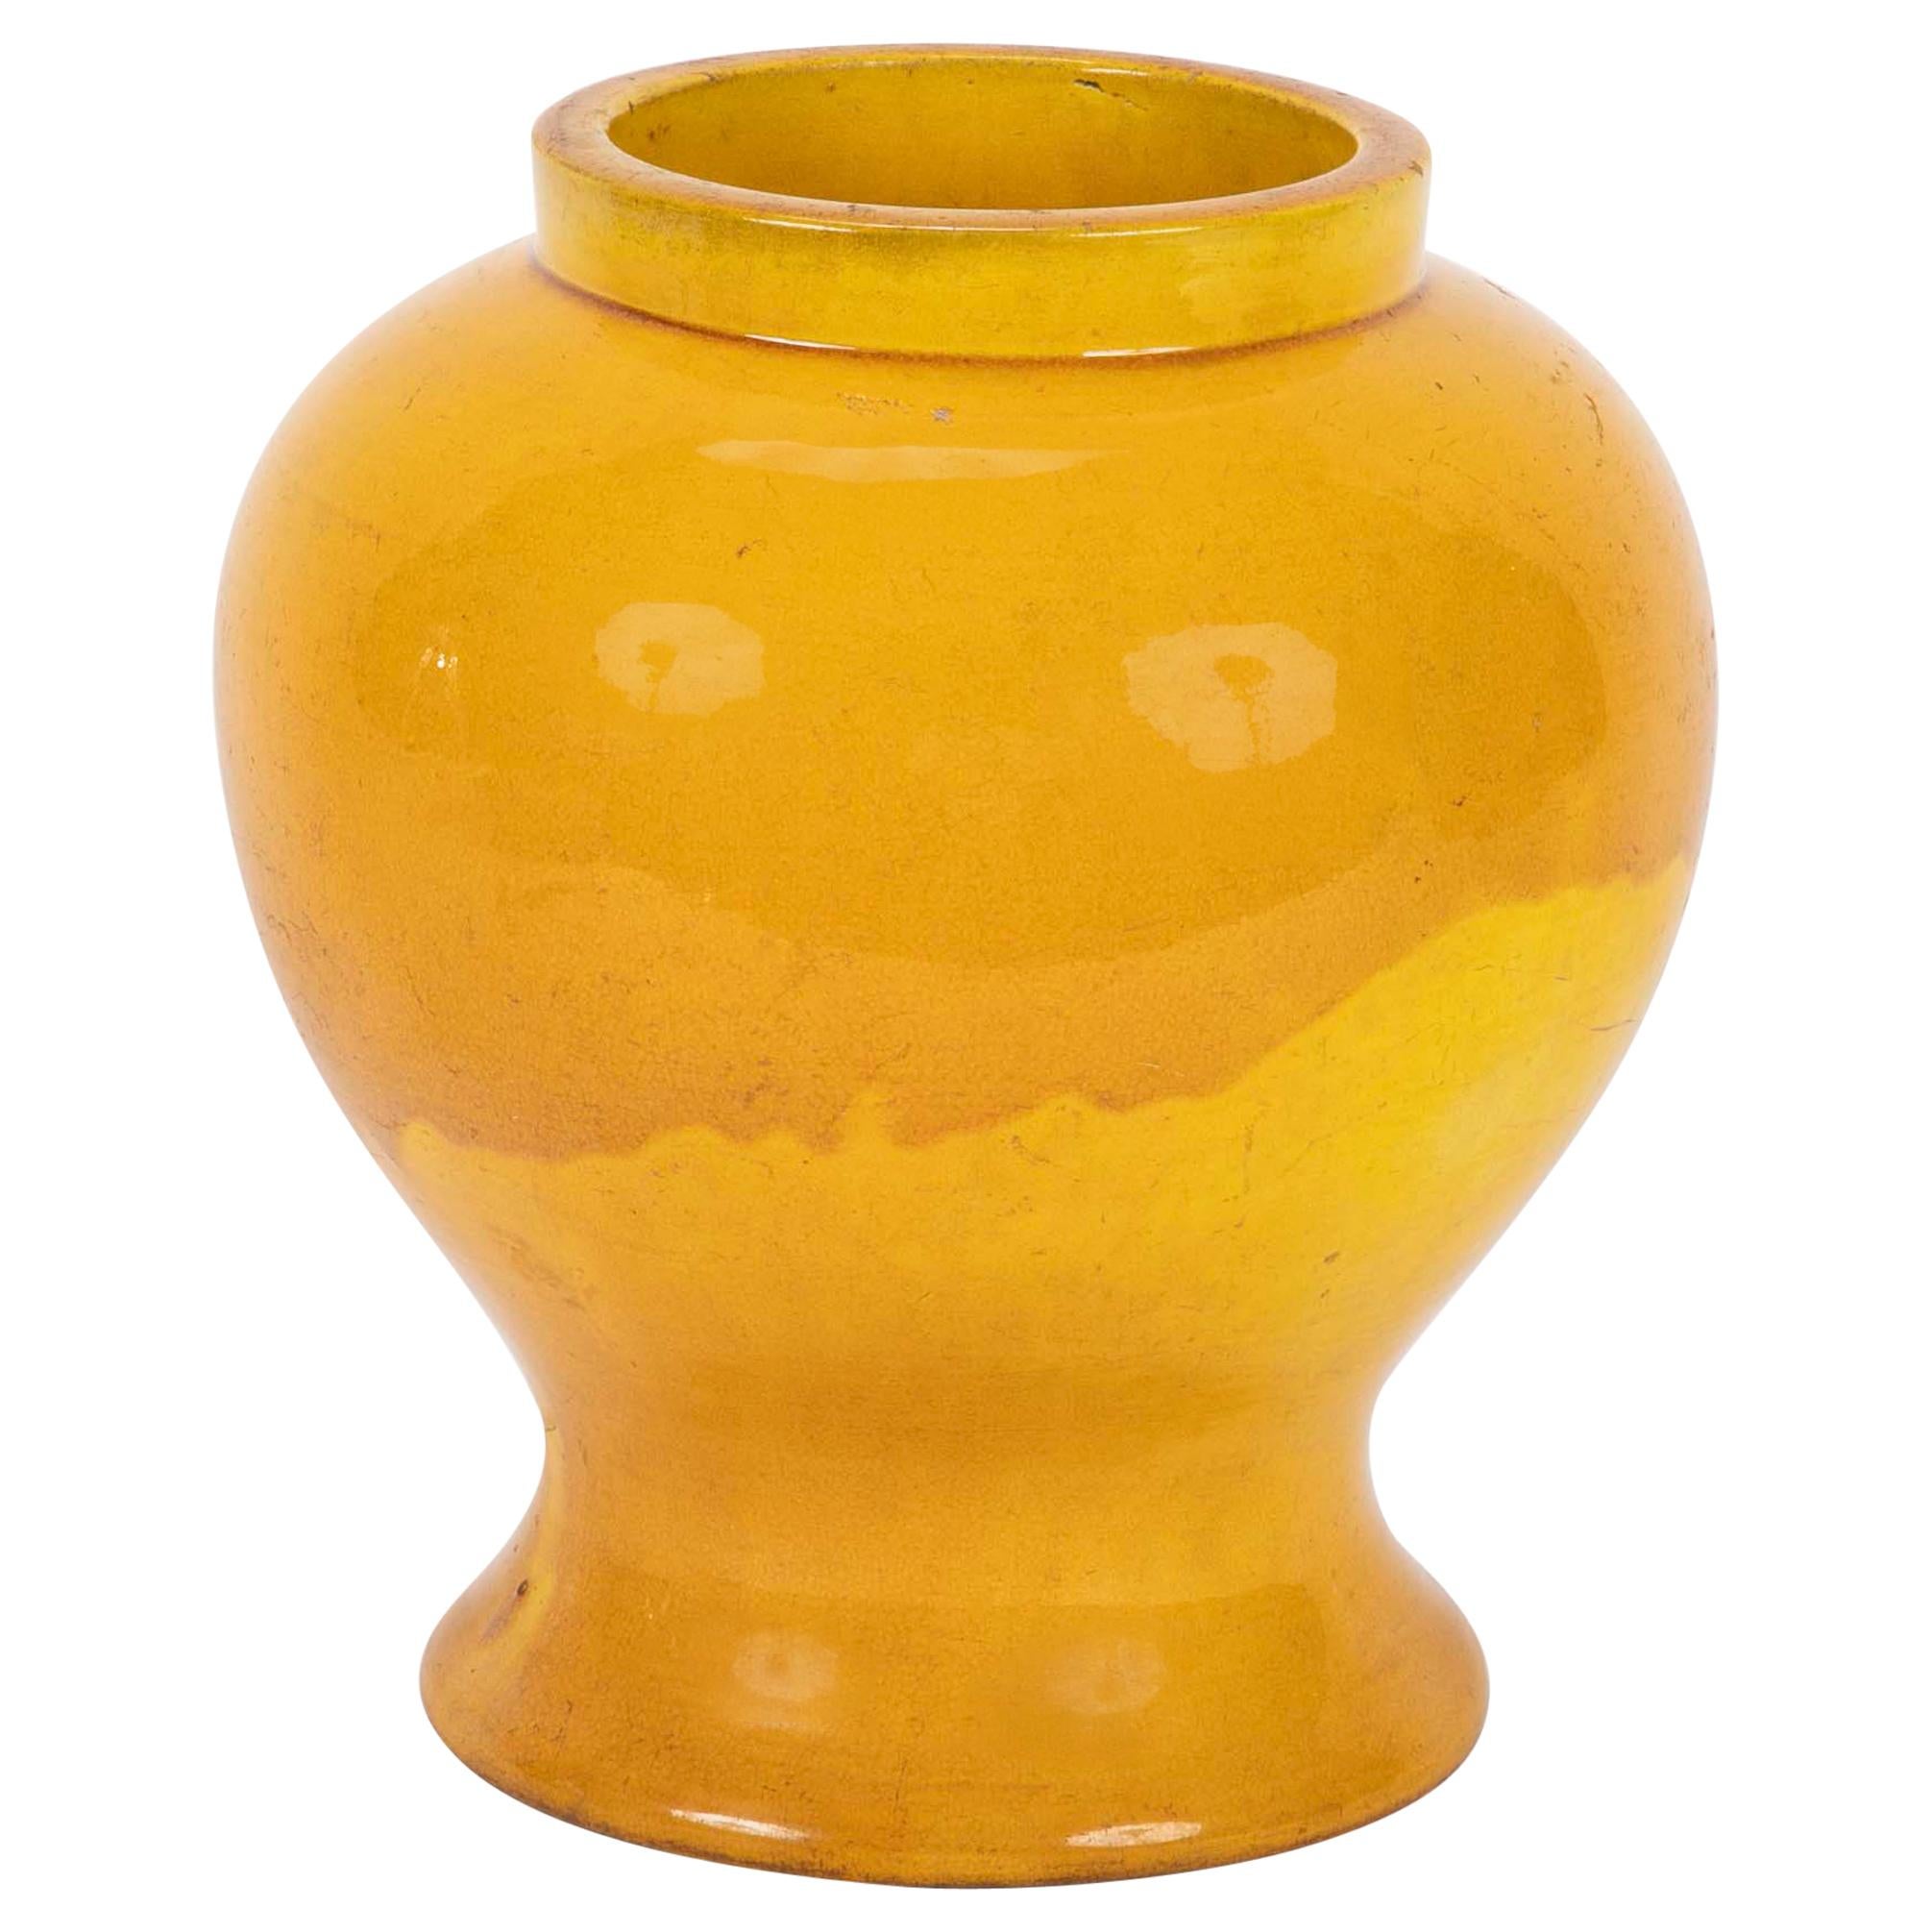 19th Century Japanese Yellow Glazed Ceramic Vase